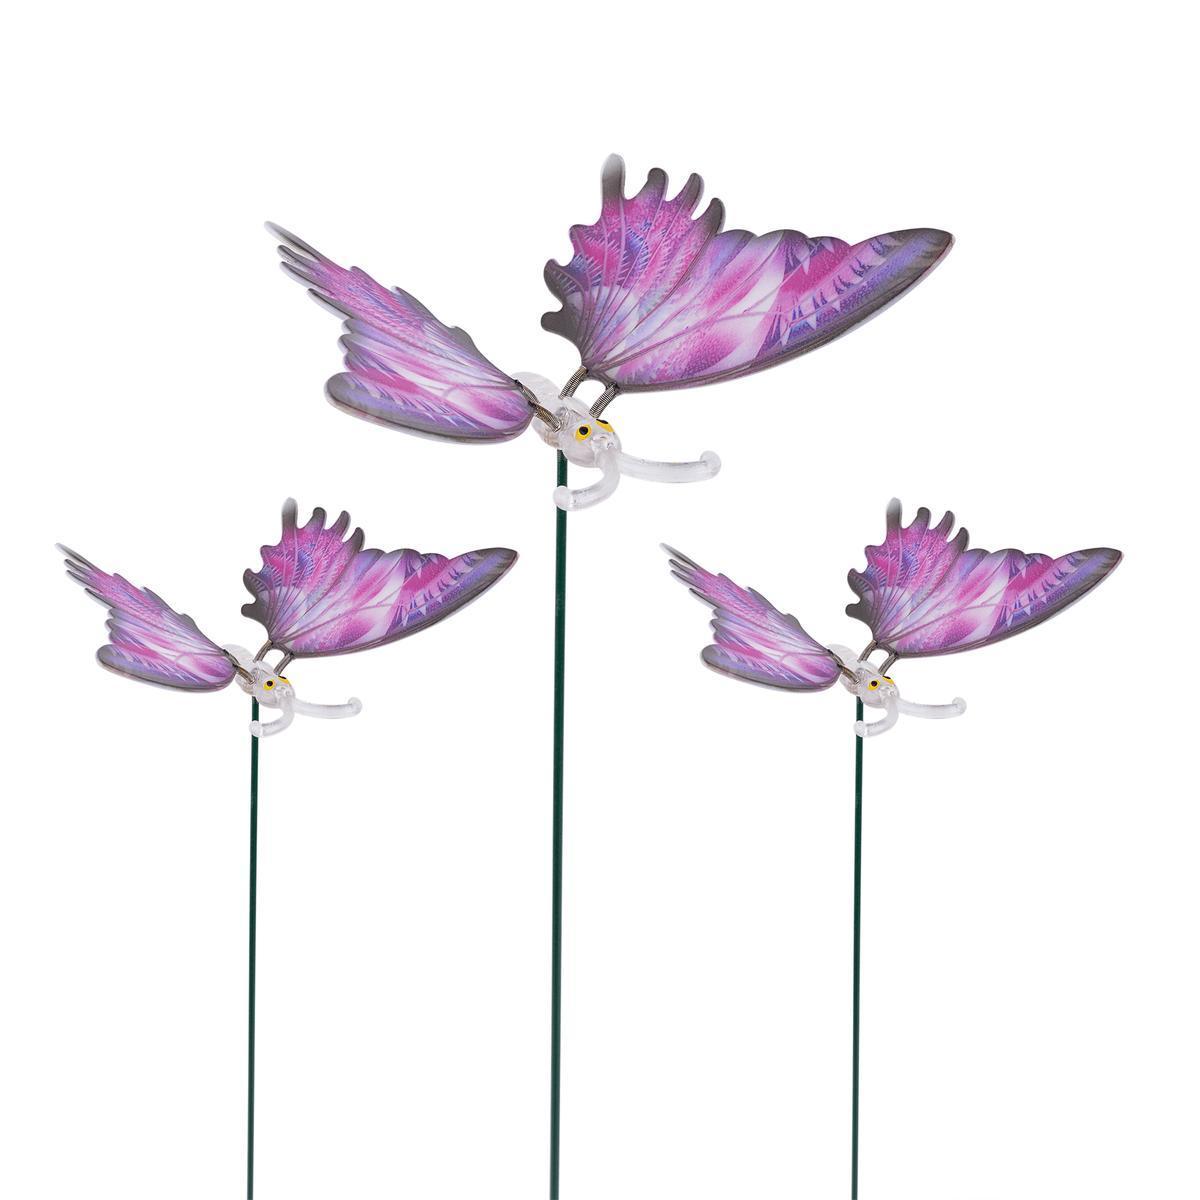 3 papillons sur pique - Violet, blanc